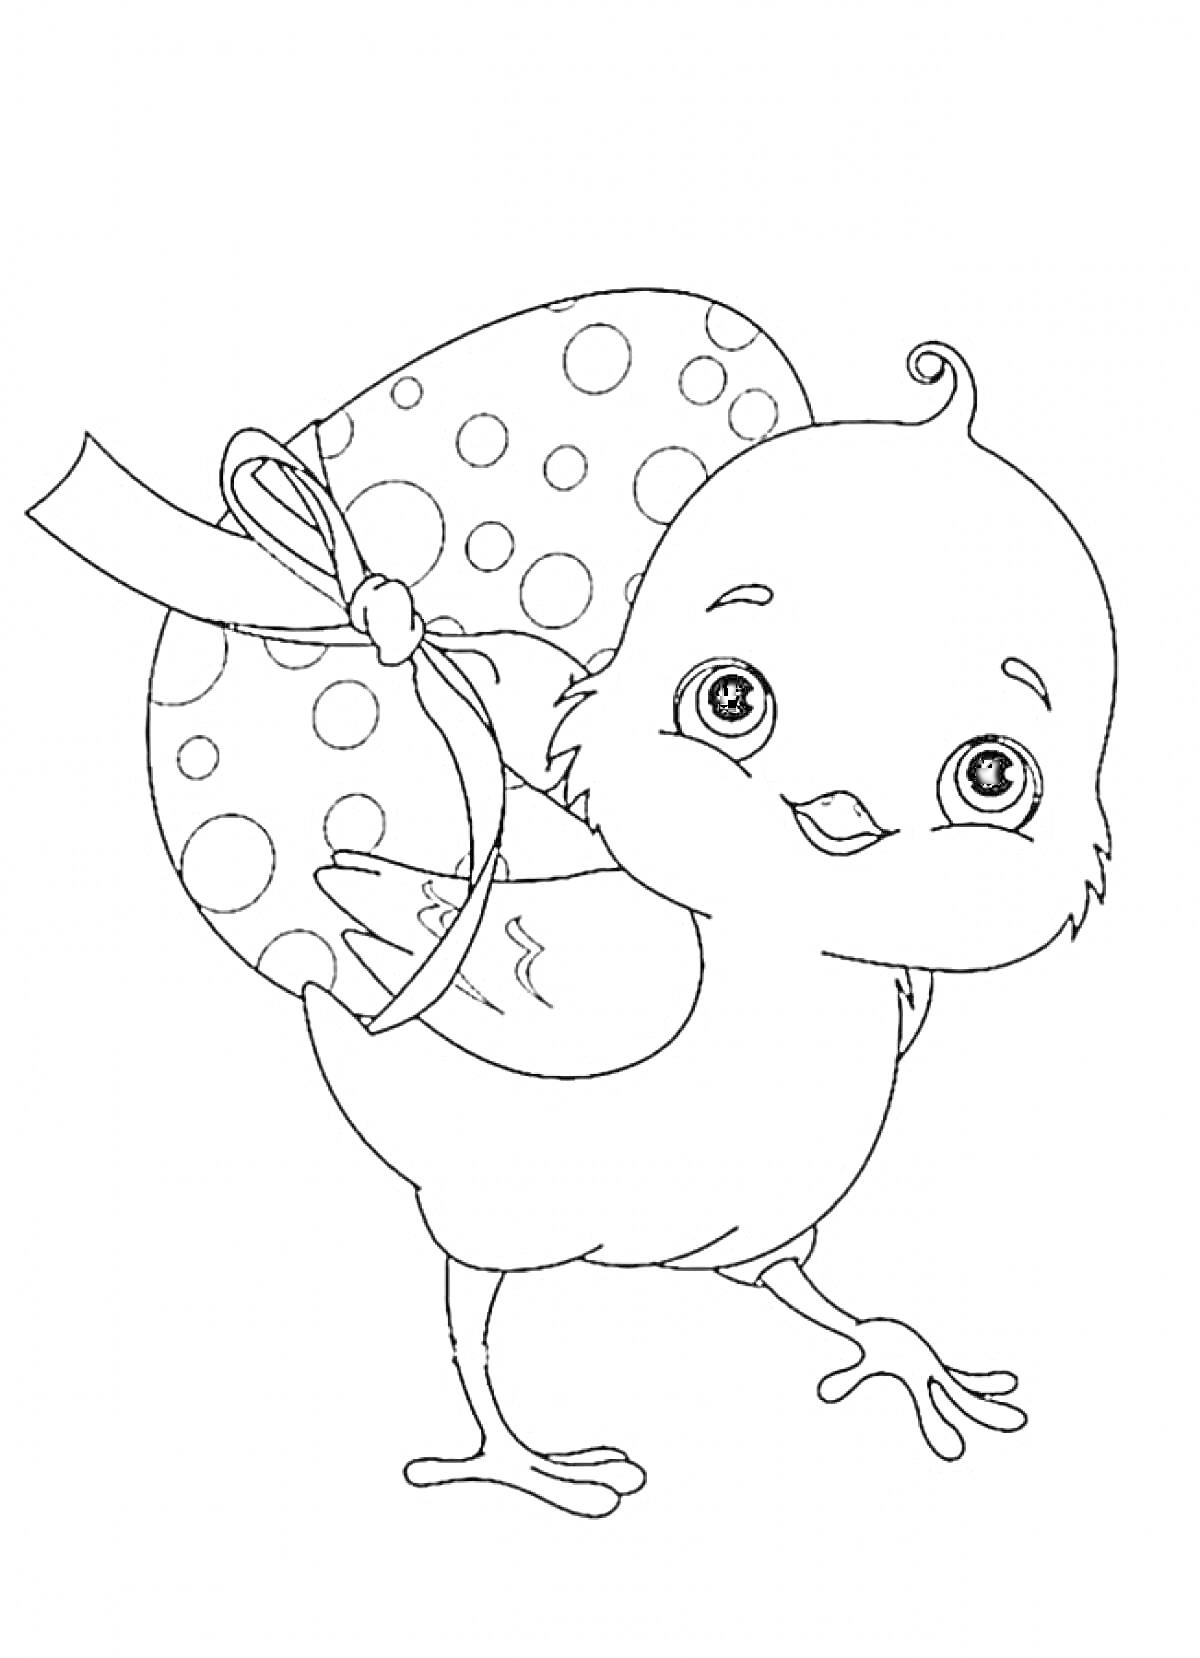 Раскраска Птенец с большим яичным яйцом в горошек и бантом